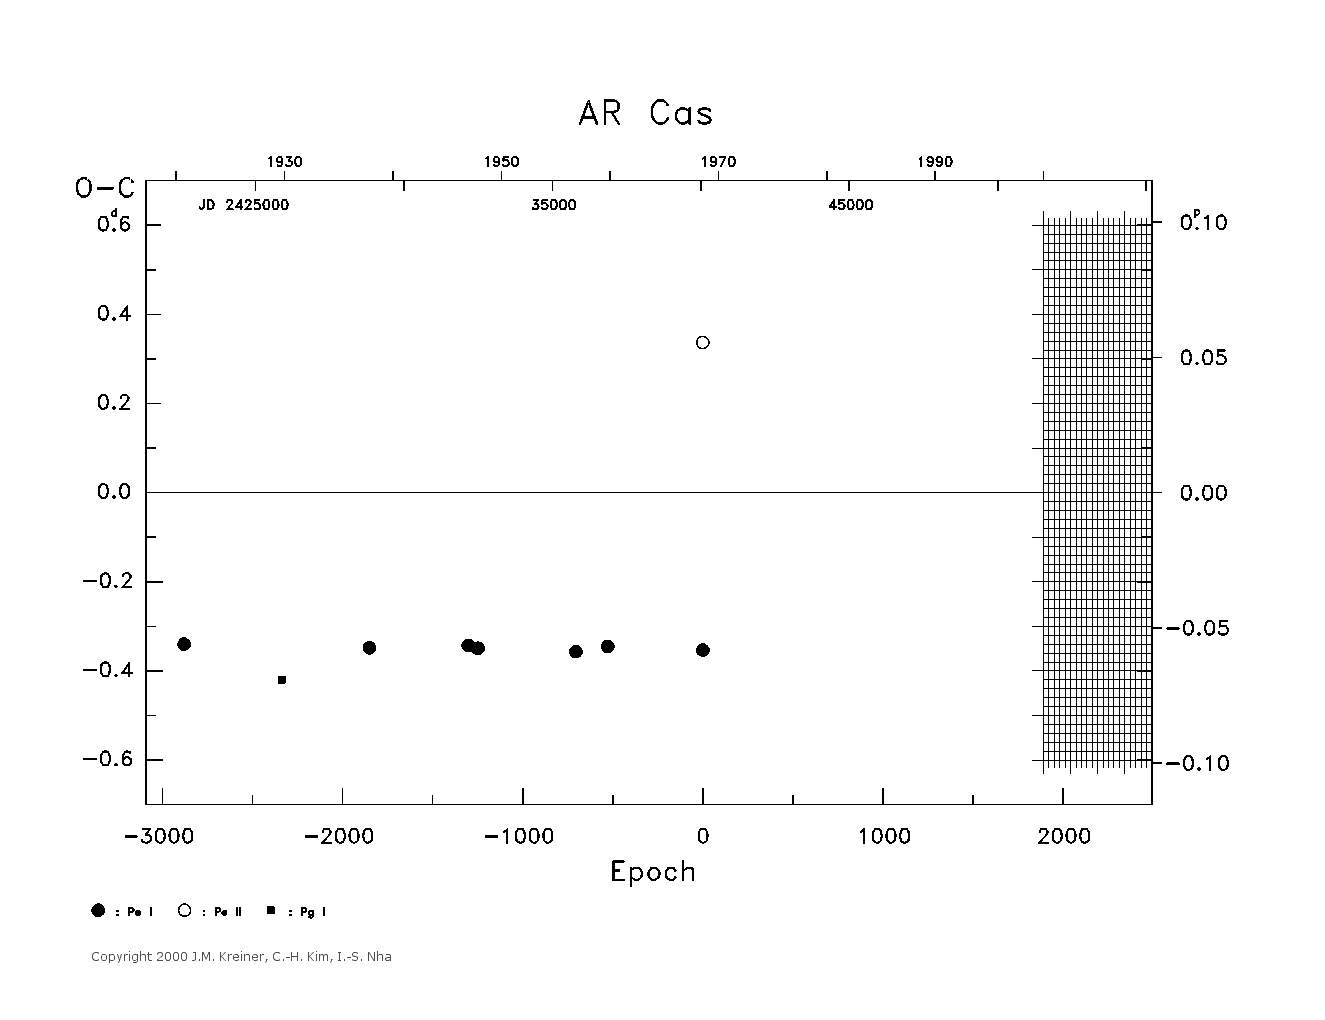 [IMAGE: large AR CAS O-C diagram]